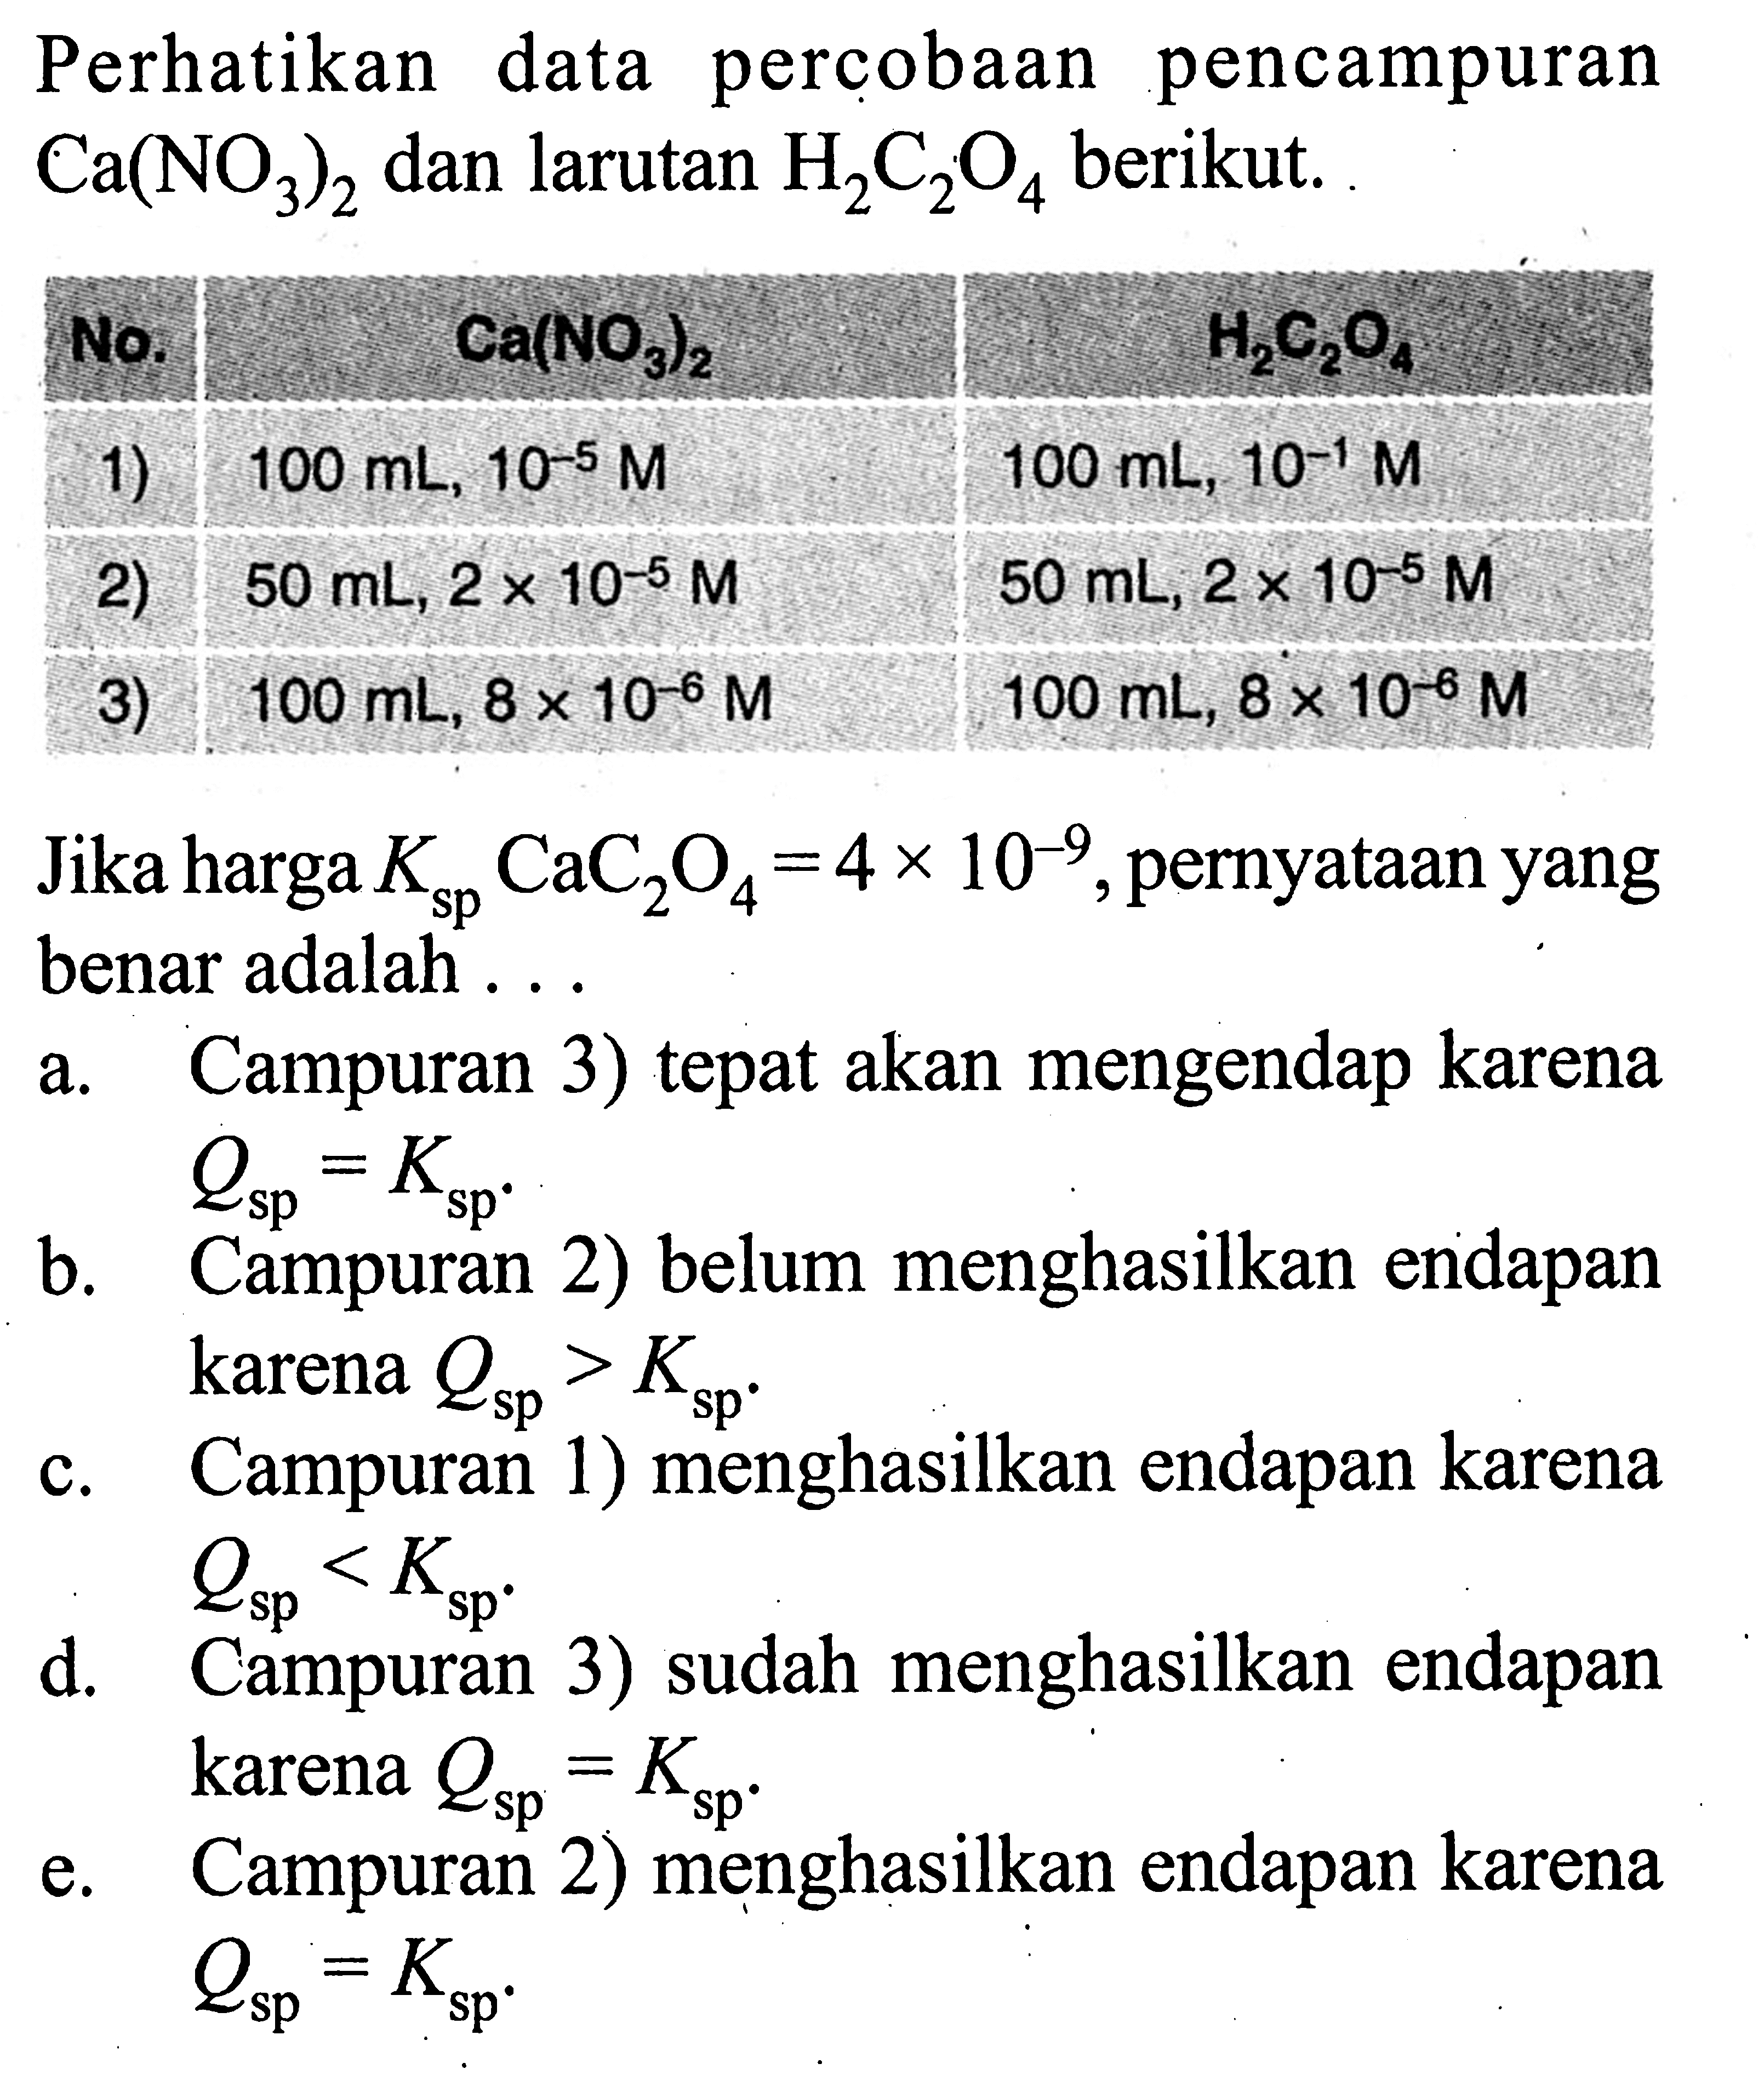 Perhatikan data percobaan pencampuran  Ca(NO3)2  dan larutan  H2 C2 O4  berikut. \/lcc  No.     Ca(NO 3   )   H2 C2 O4    1)   100 mL, 10^-5 M  100 mL, 10^-1 M    2)   50 mL, 2x 10^-5 M  50 mL, 2x 10^-5 M    3)   100 mL, 8 x 10^-6 M  100 mL, 8 x 10^-6 M     Jika harga  Ksp CaC2 O4=4 x 10^-9 , pernyataan yang benar adalah ...a. Campuran 3) tepat akan mengendap karena  Qsp=Ksp b. Campuran 2) belum menghasilkan endapan karena  Qsp>Ksp c. Campuran 1) menghasilkan endapan karena  Qsp<Ksp d. Campuran 3) sudah menghasilkan endapan karena  Q sp =K sp  .e. Campuran 2) menghasilkan endapan karena  Qsp=Ksp 